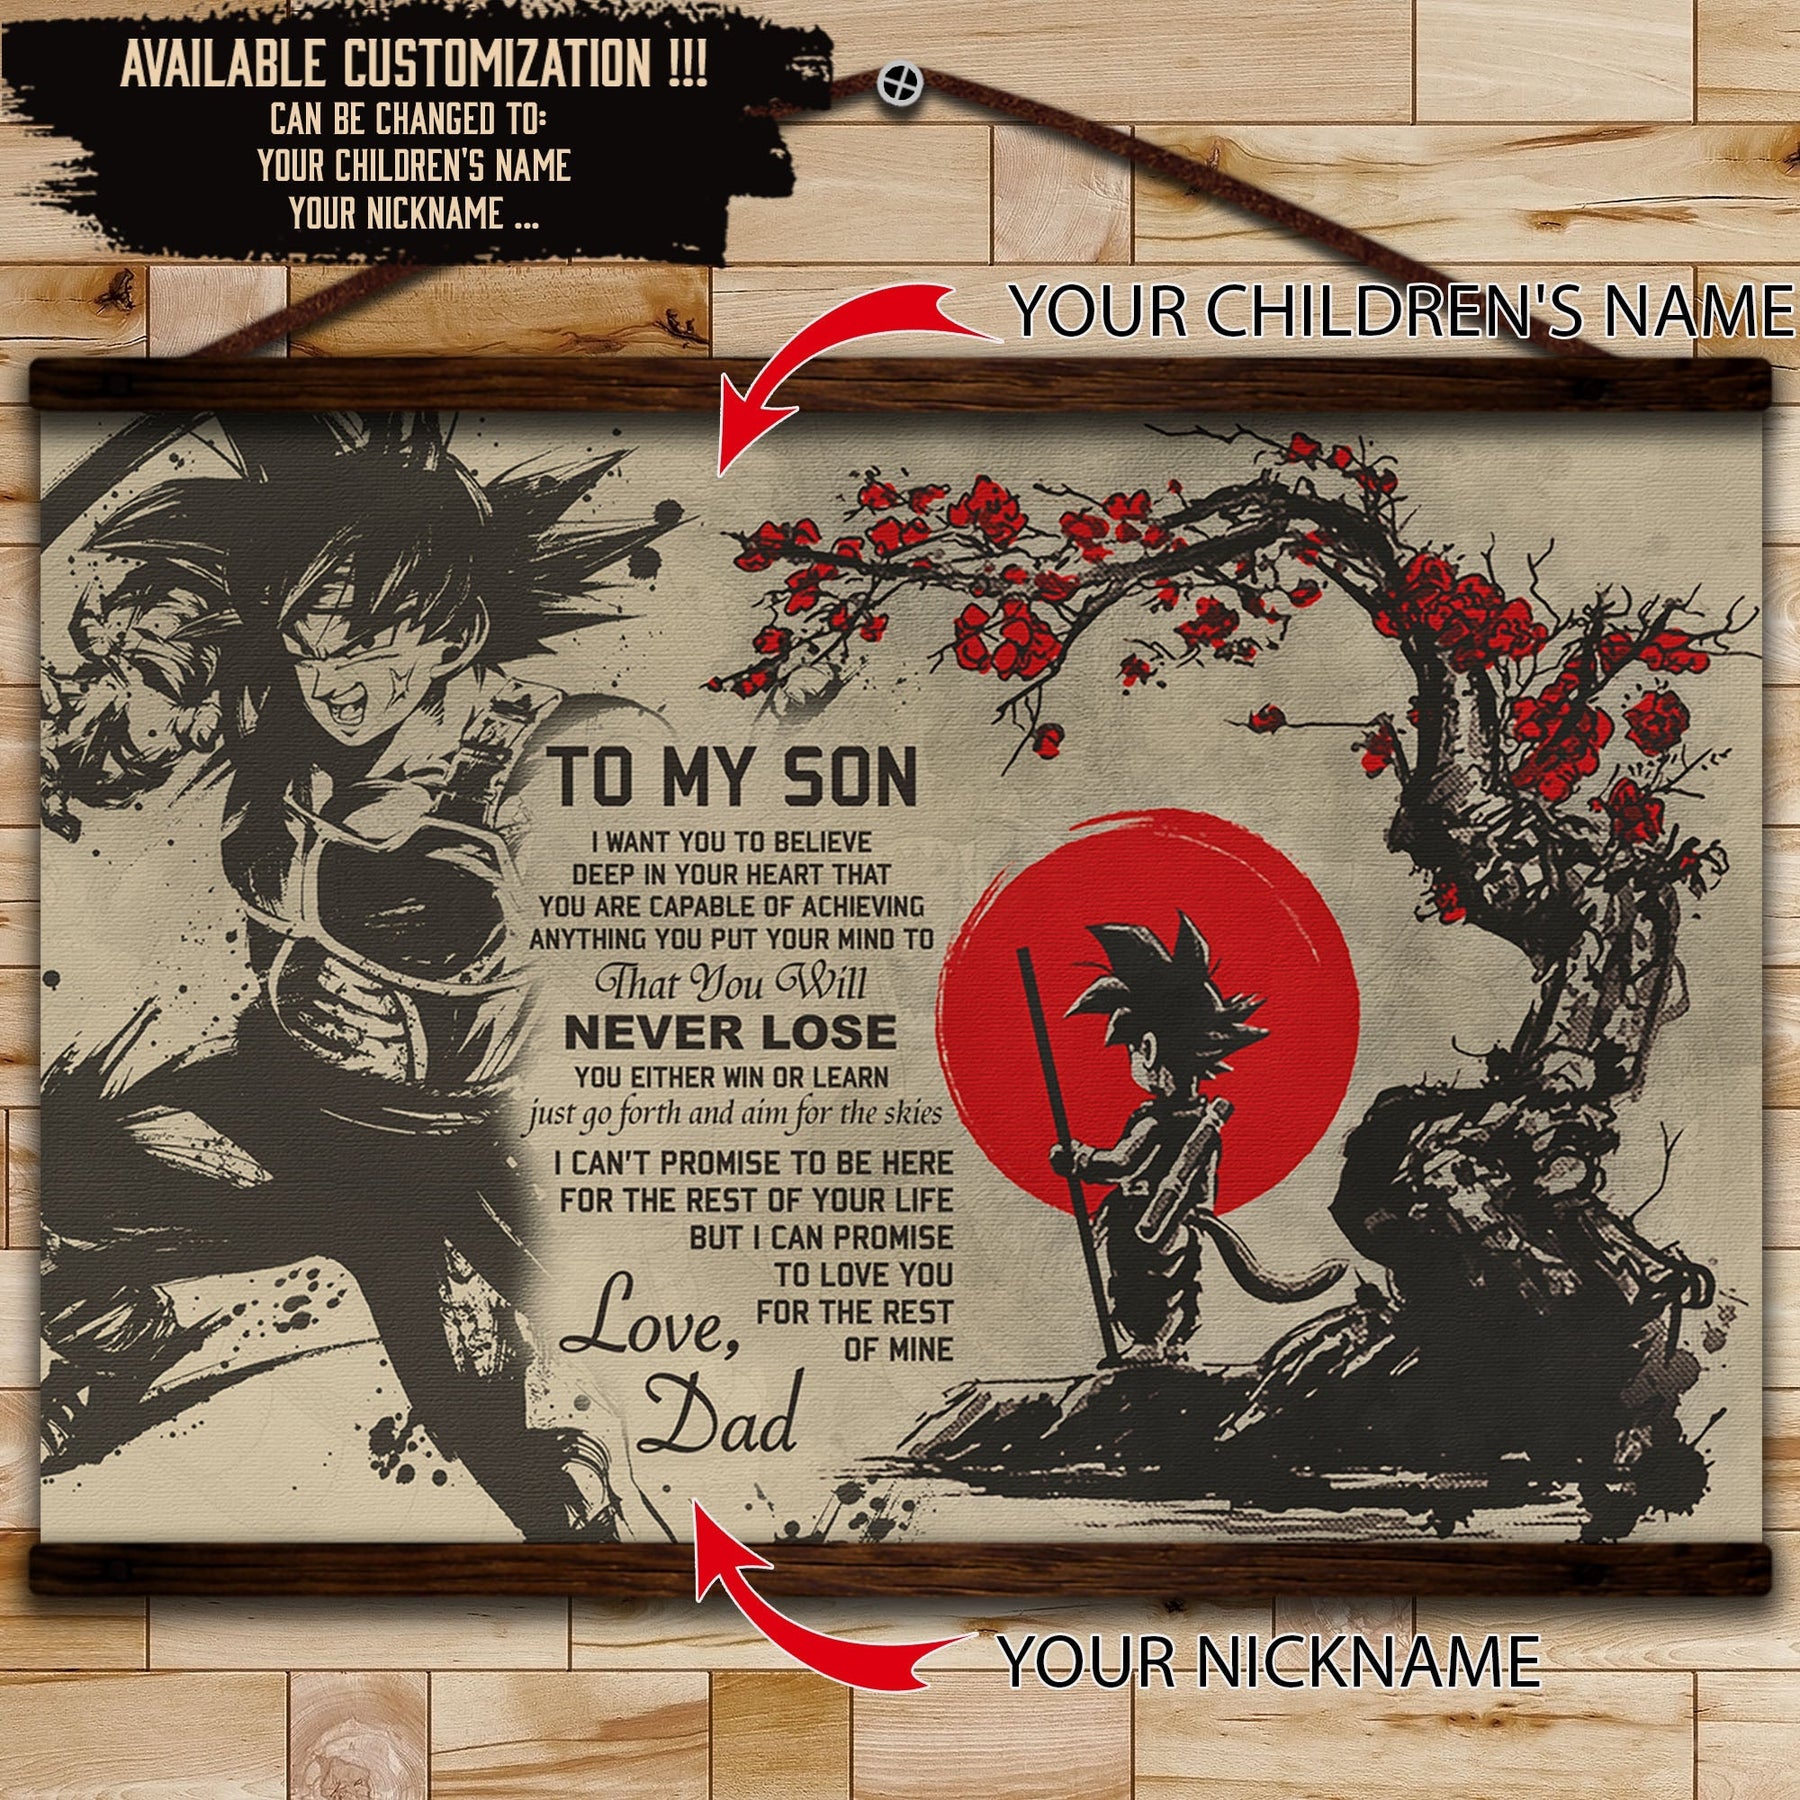 DR002 - To My Son - Goku - English - Horizontal Poster - Horizontal Canvas - Dragon Ball Poster